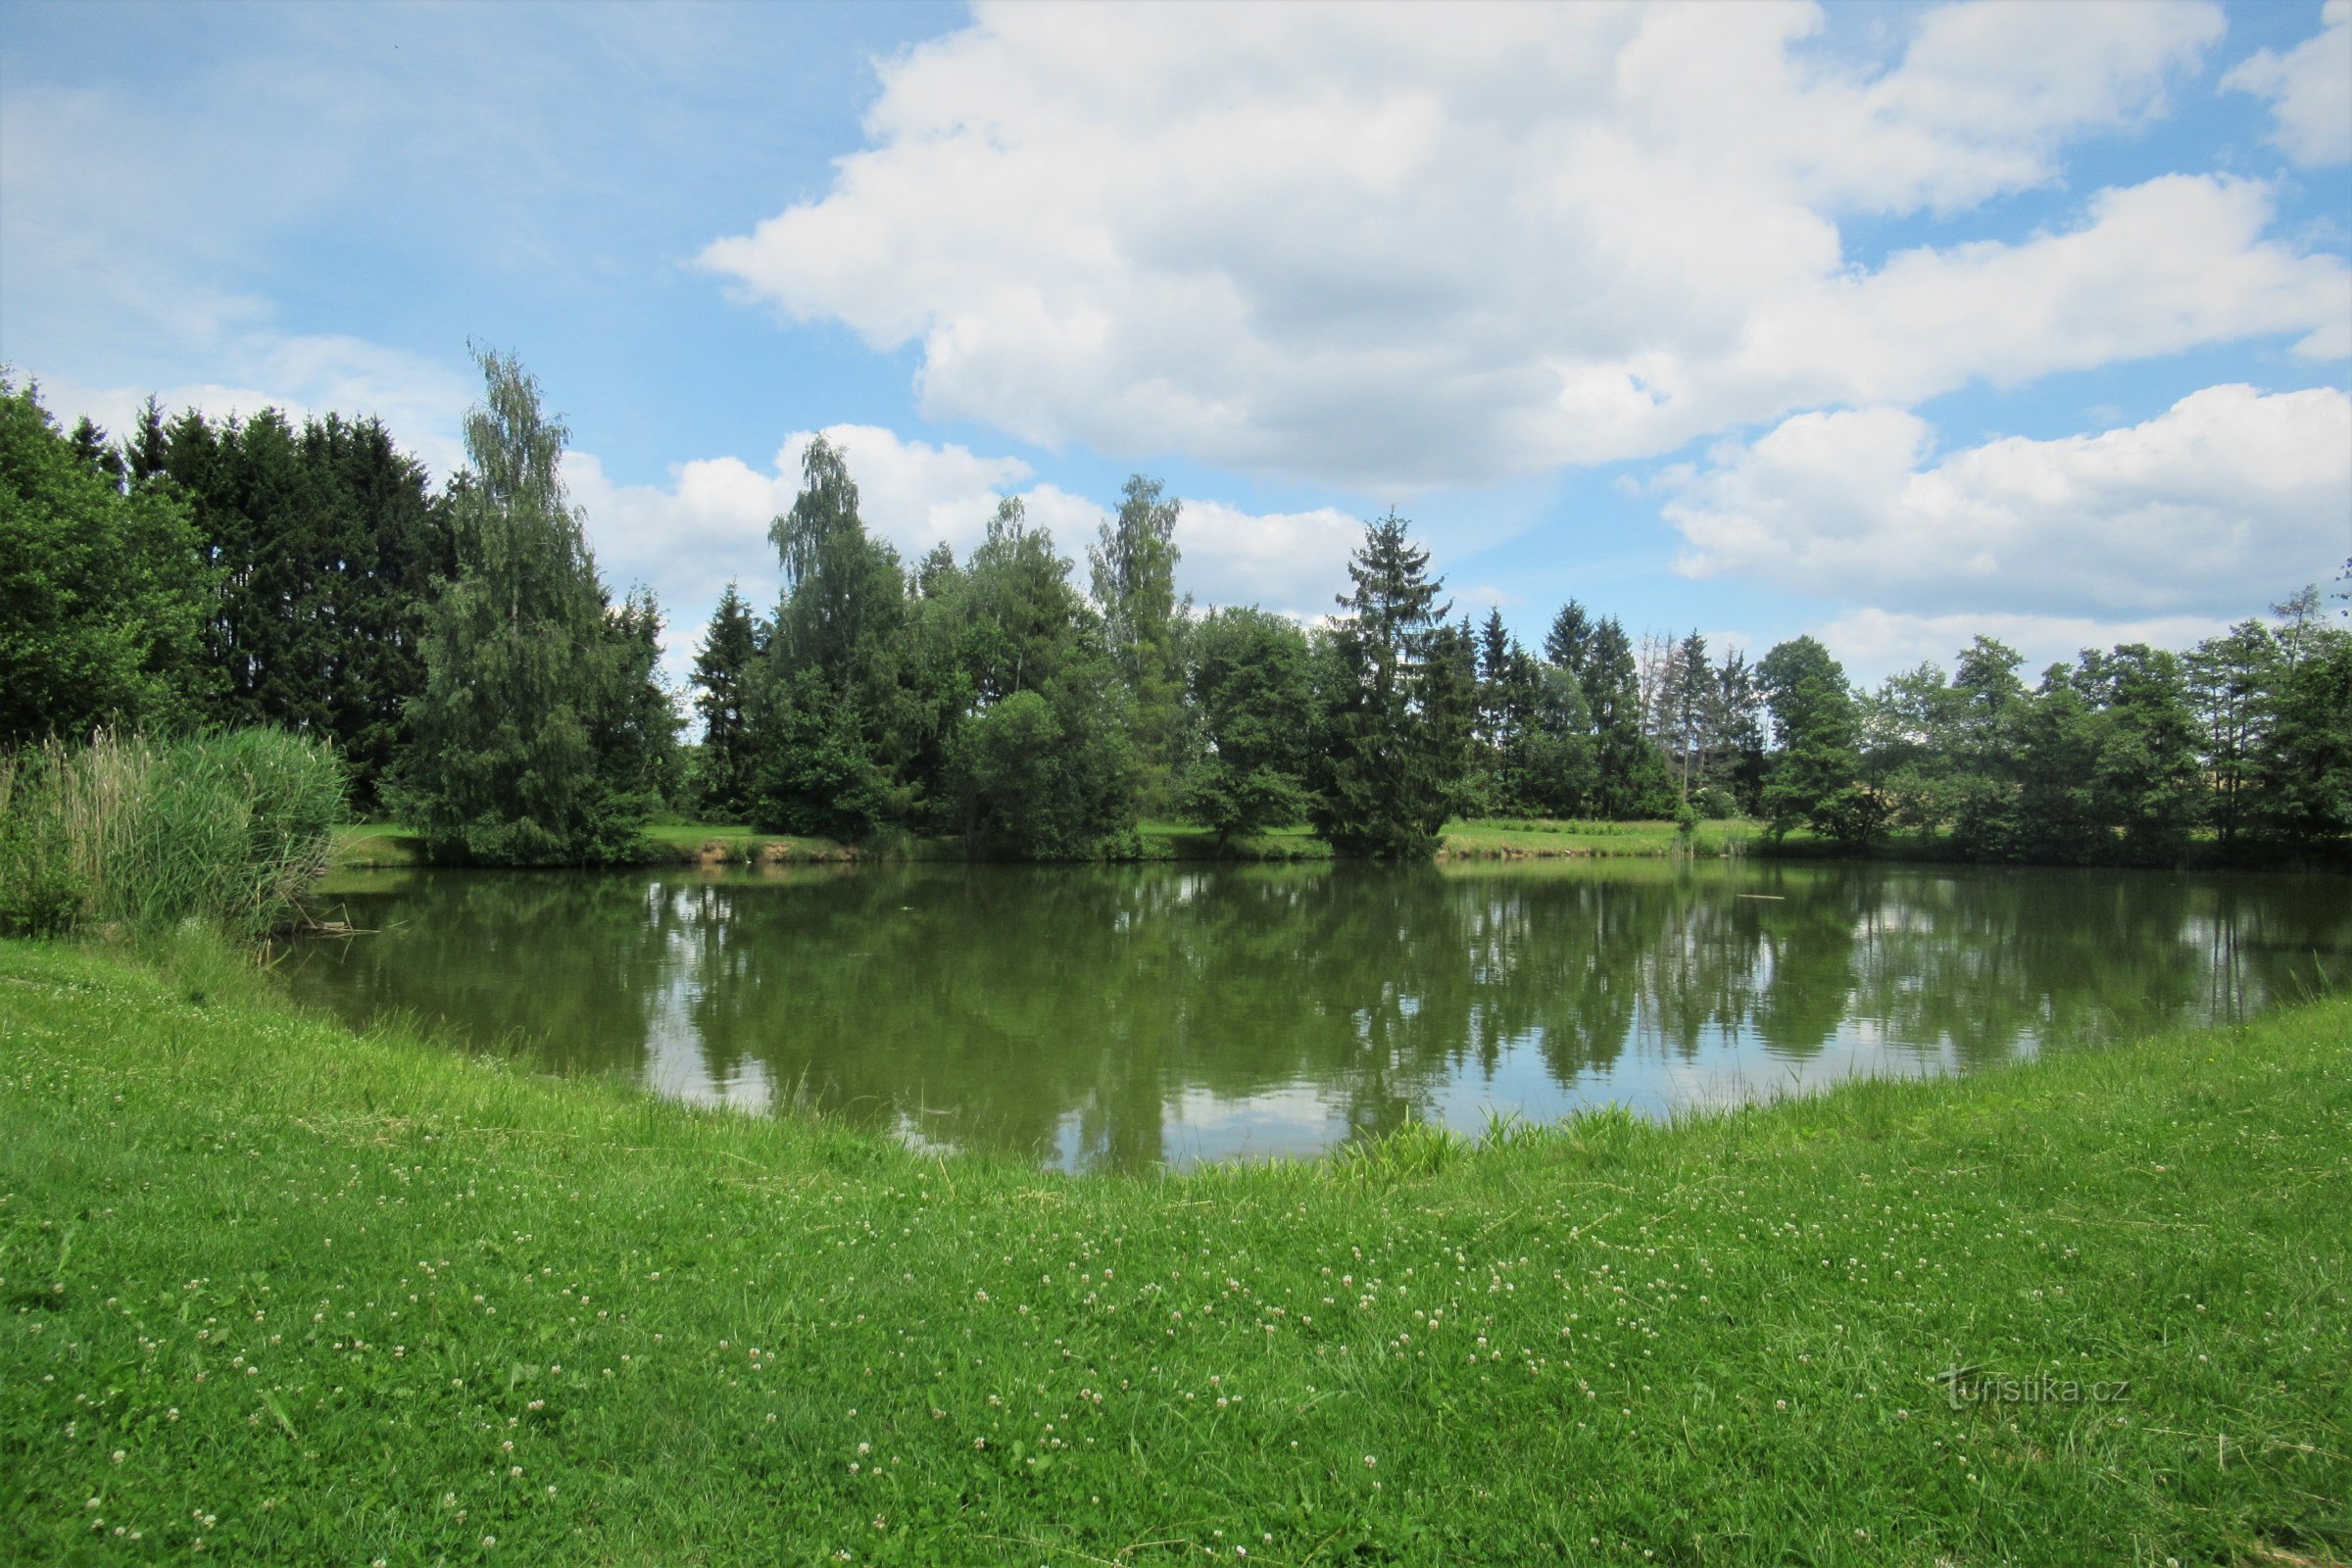 Un laghetto con disposizione a parco